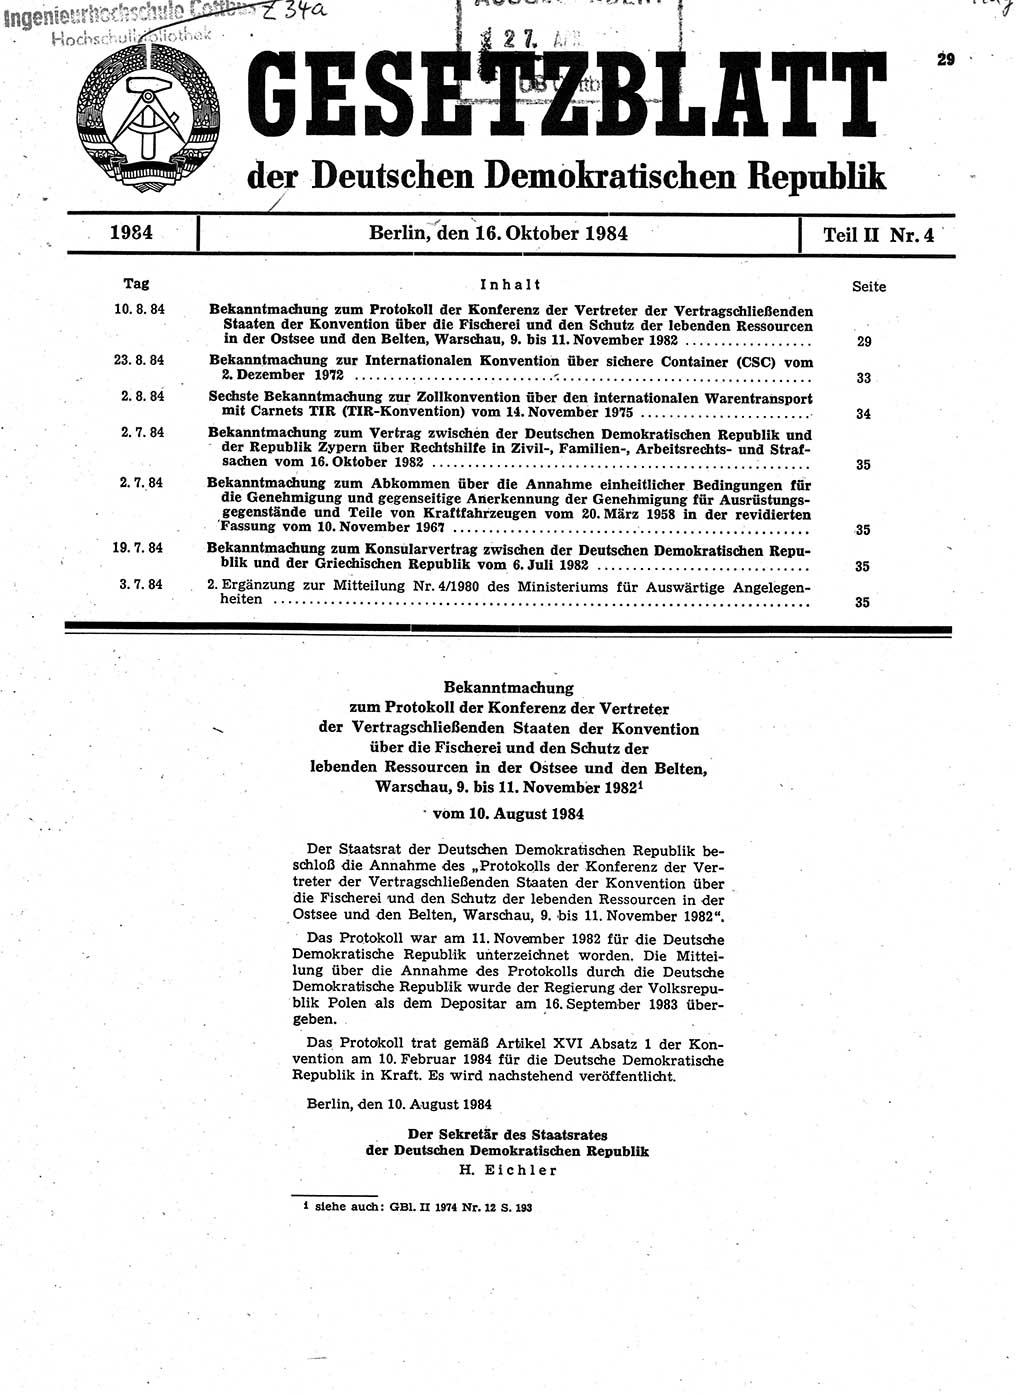 Gesetzblatt (GBl.) der Deutschen Demokratischen Republik (DDR) Teil ⅠⅠ 1984, Seite 29 (GBl. DDR ⅠⅠ 1984, S. 29)